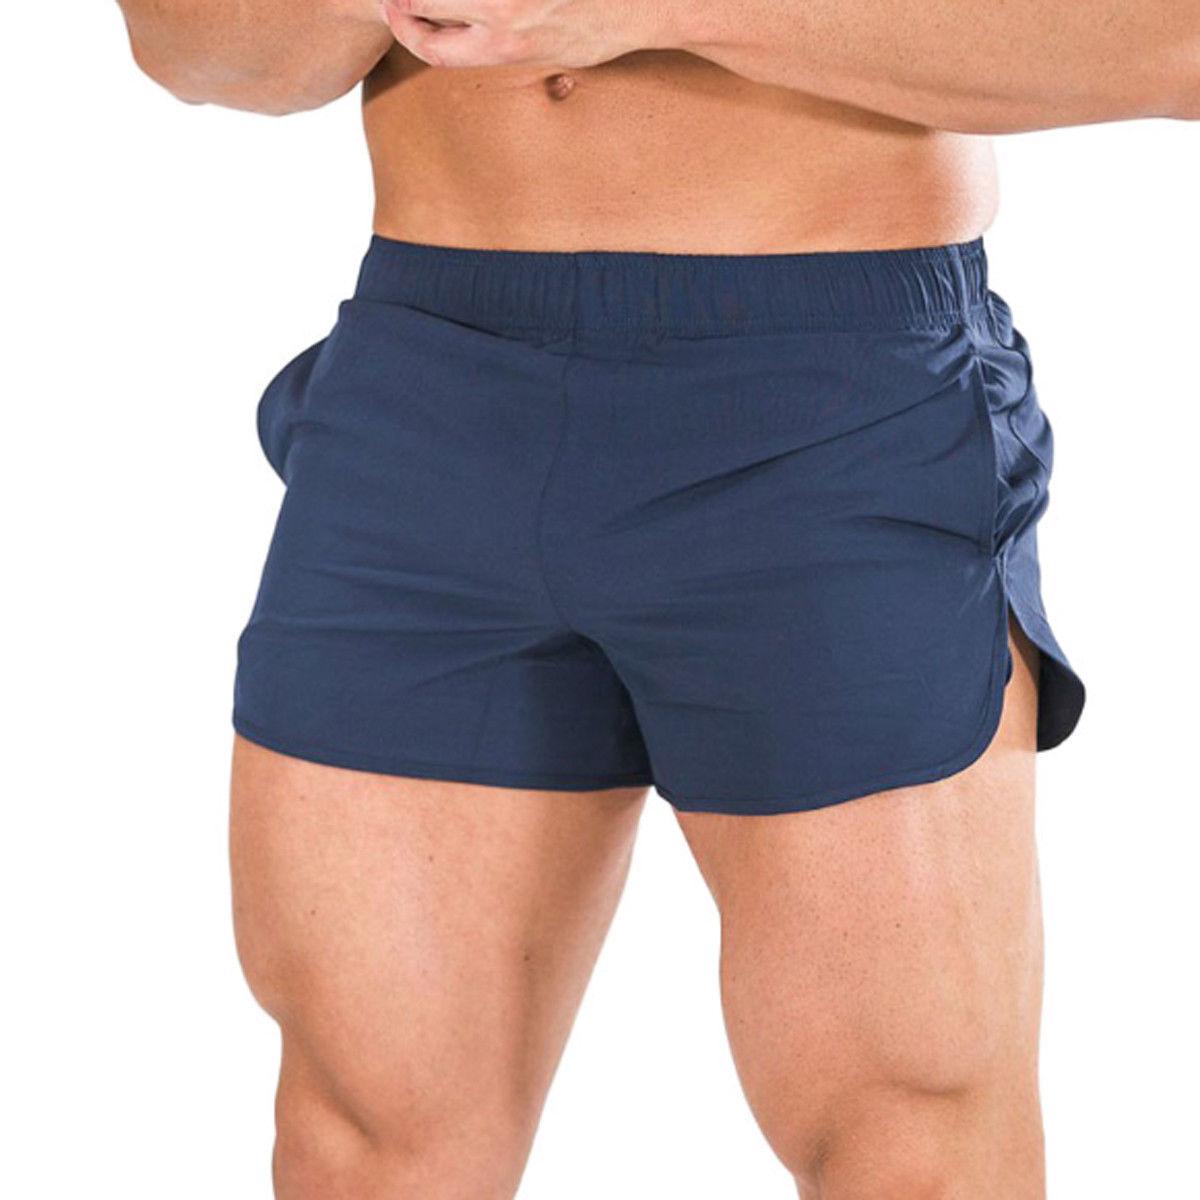 Изображение товара: Шорты мужские спортивные хлопковые, дышащие спортивные штаны для бодибилдинга, бега, фитнеса, облегающие, летние